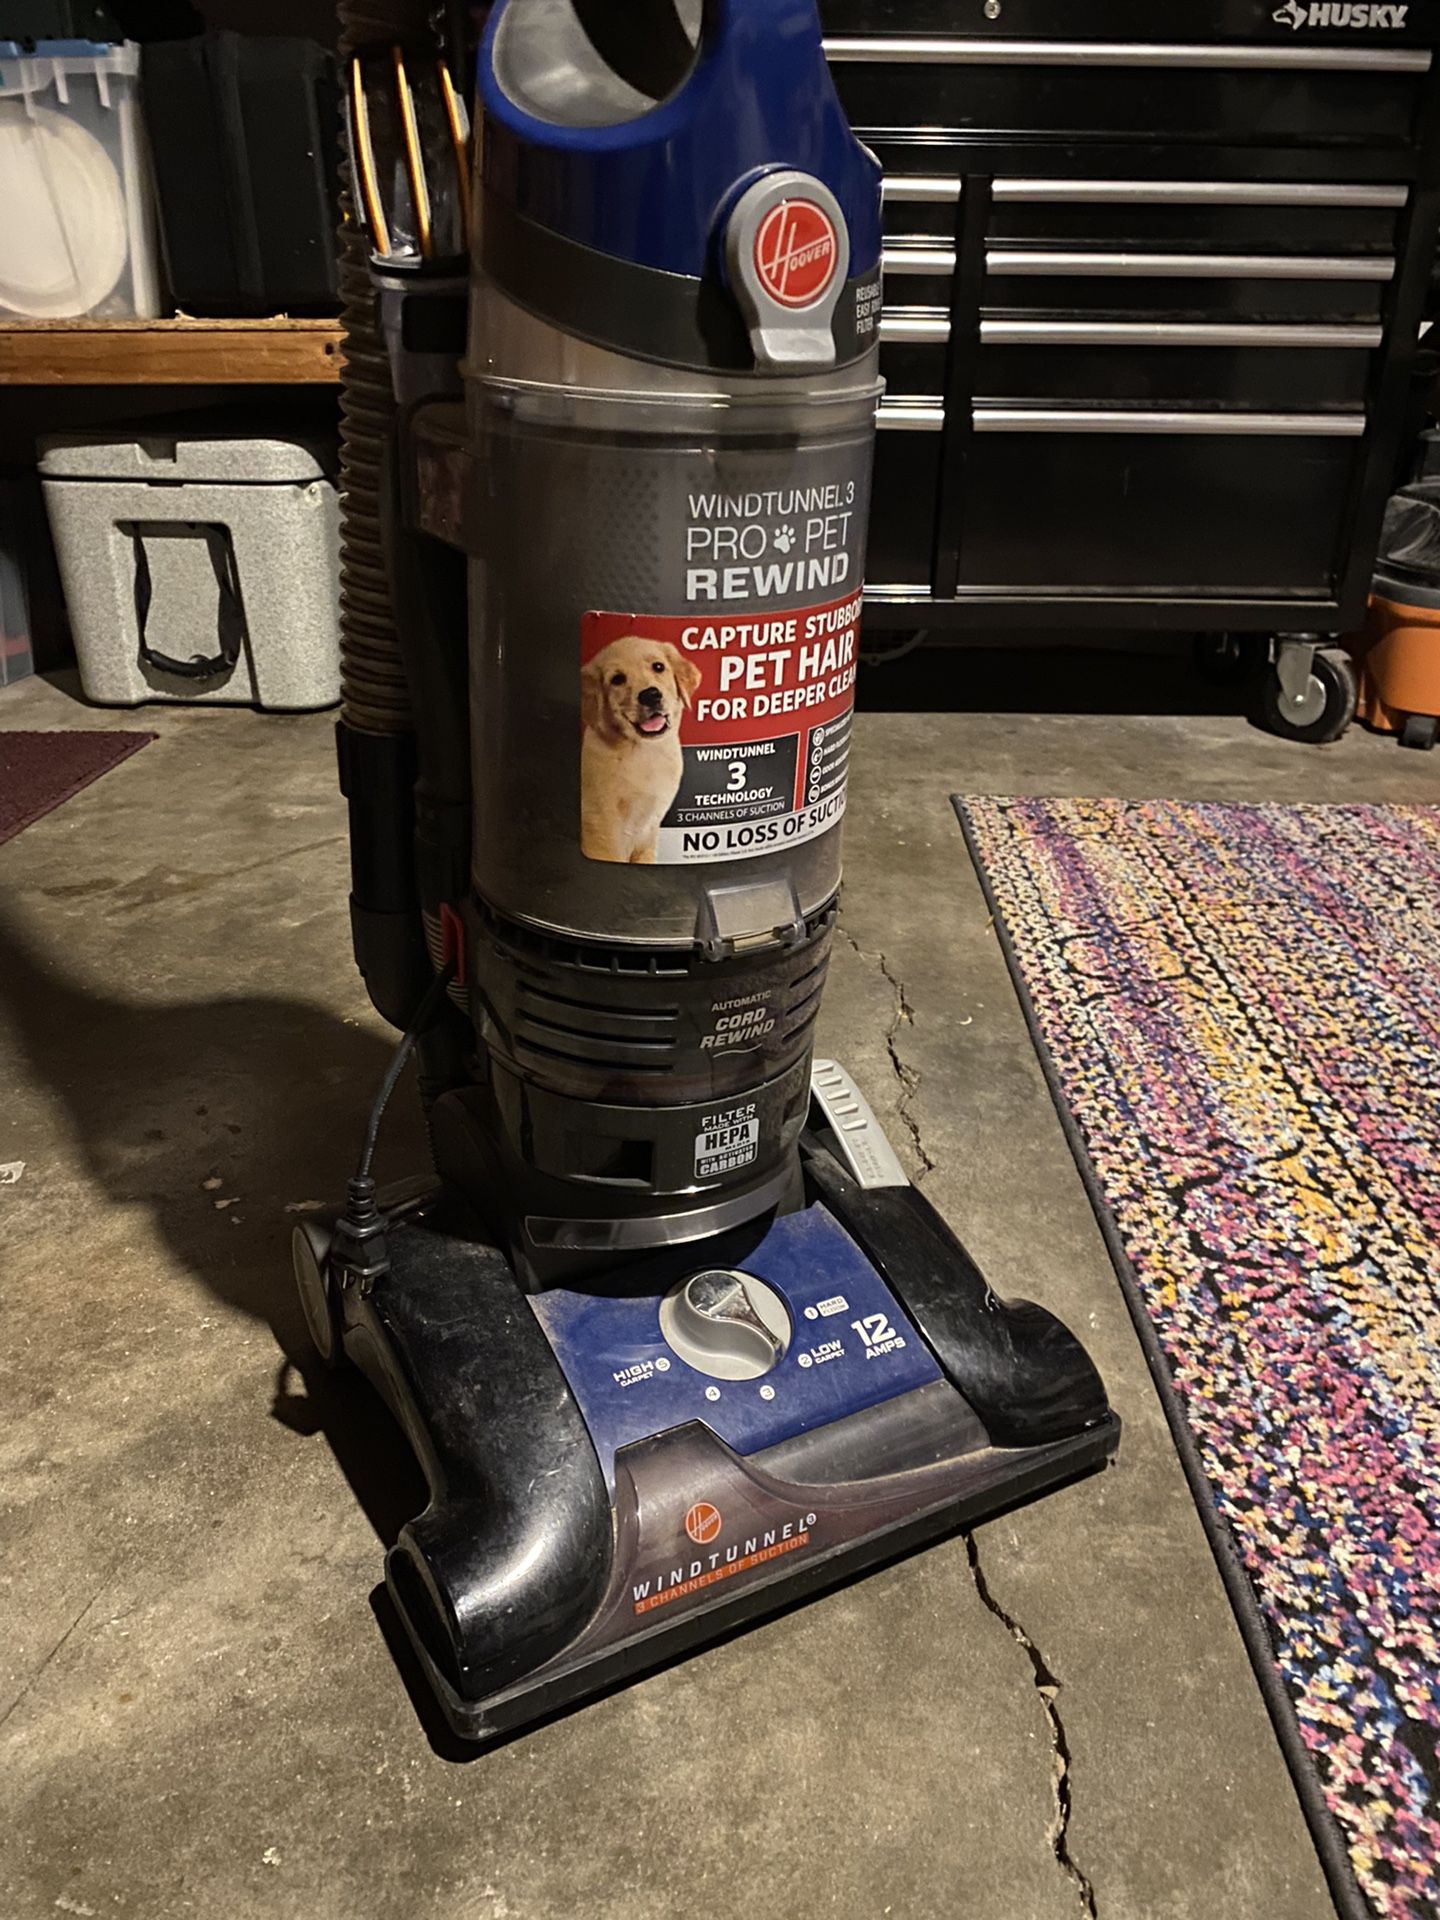 Free Vacuum